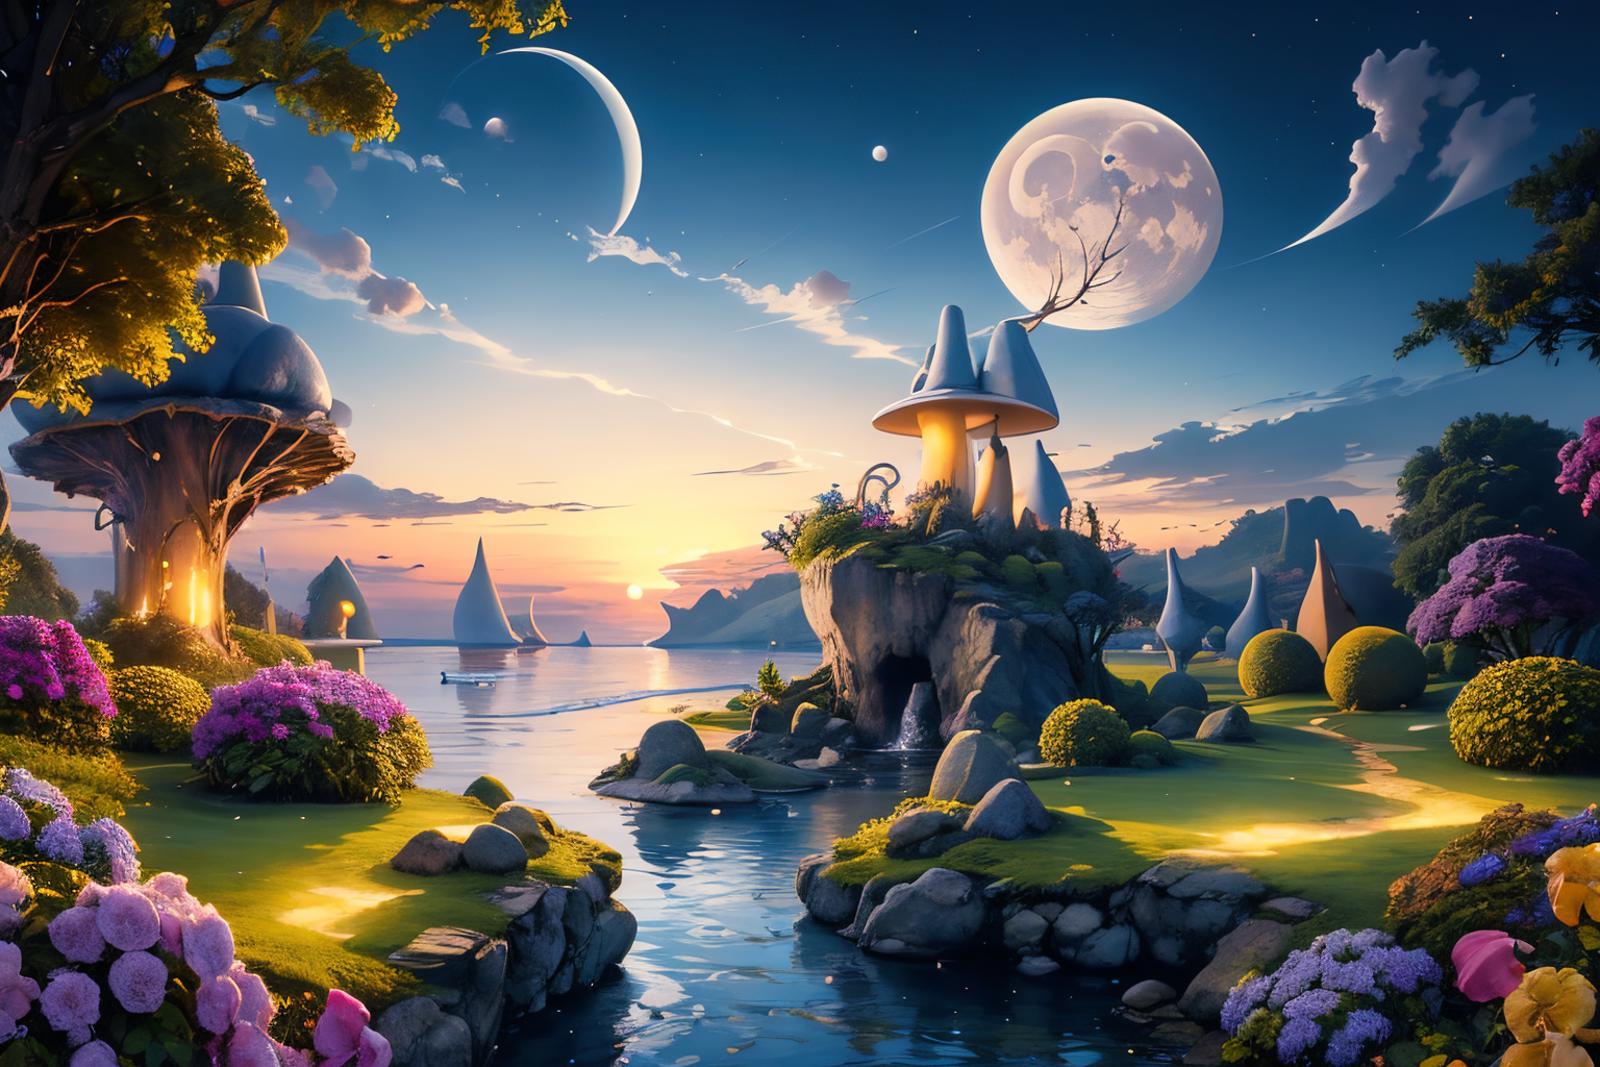 Edob Fairy Tale Landscape image by edobgames